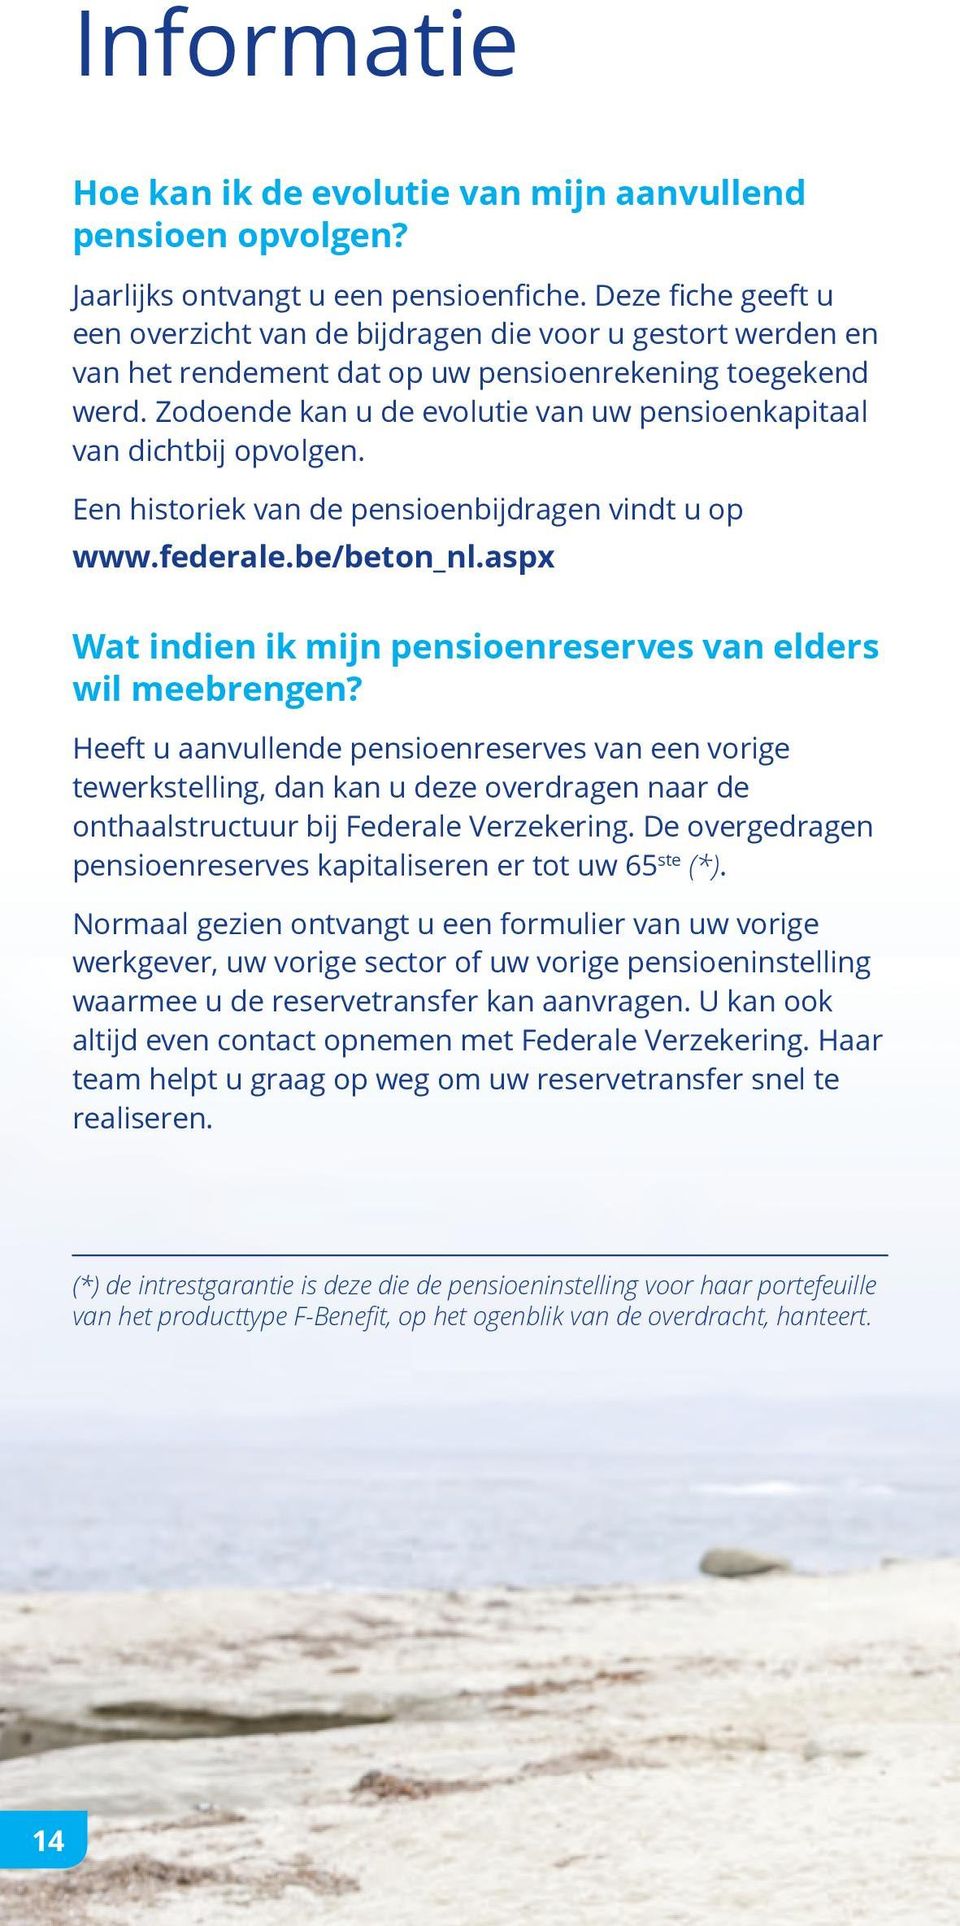 Zodoende kan u de evolutie van uw pensioenkapitaal van dichtbij opvolgen. Een historiek van de pensioenbijdragen vindt u op www.federale.be/beton_nl.